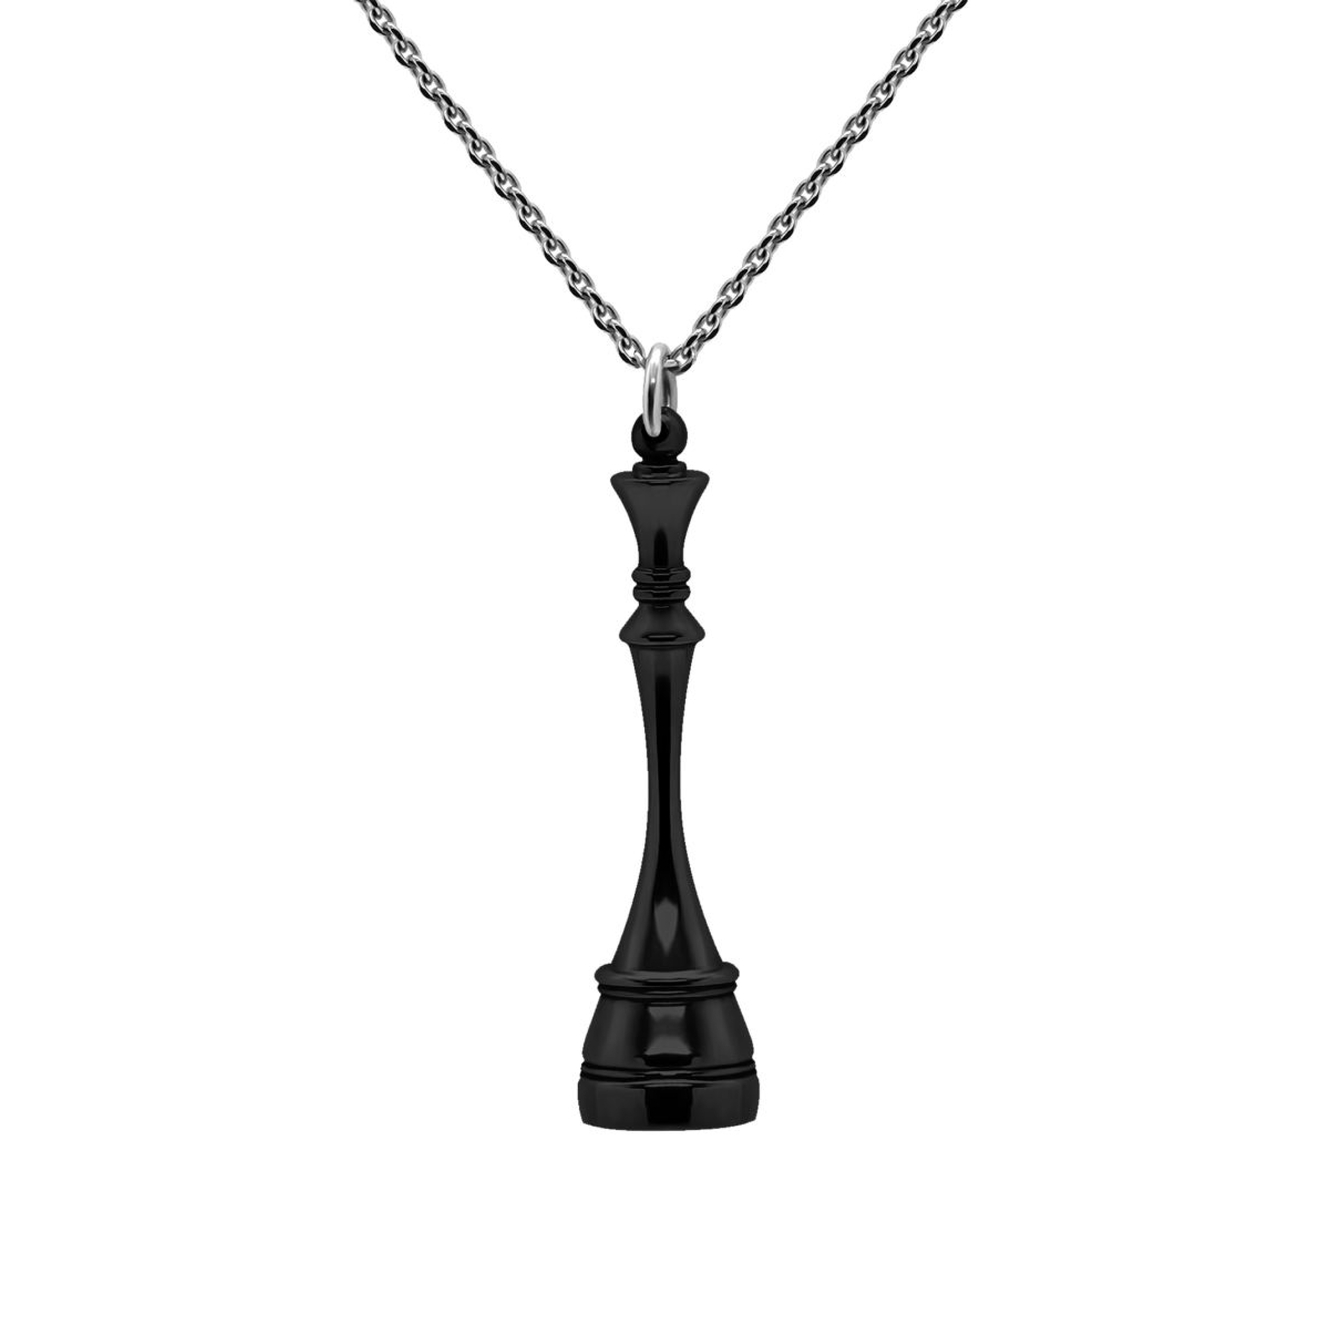 Prosto Jewelry Подвеска Королева Black из серебра prosto jewlry серьги ладьи из серебра